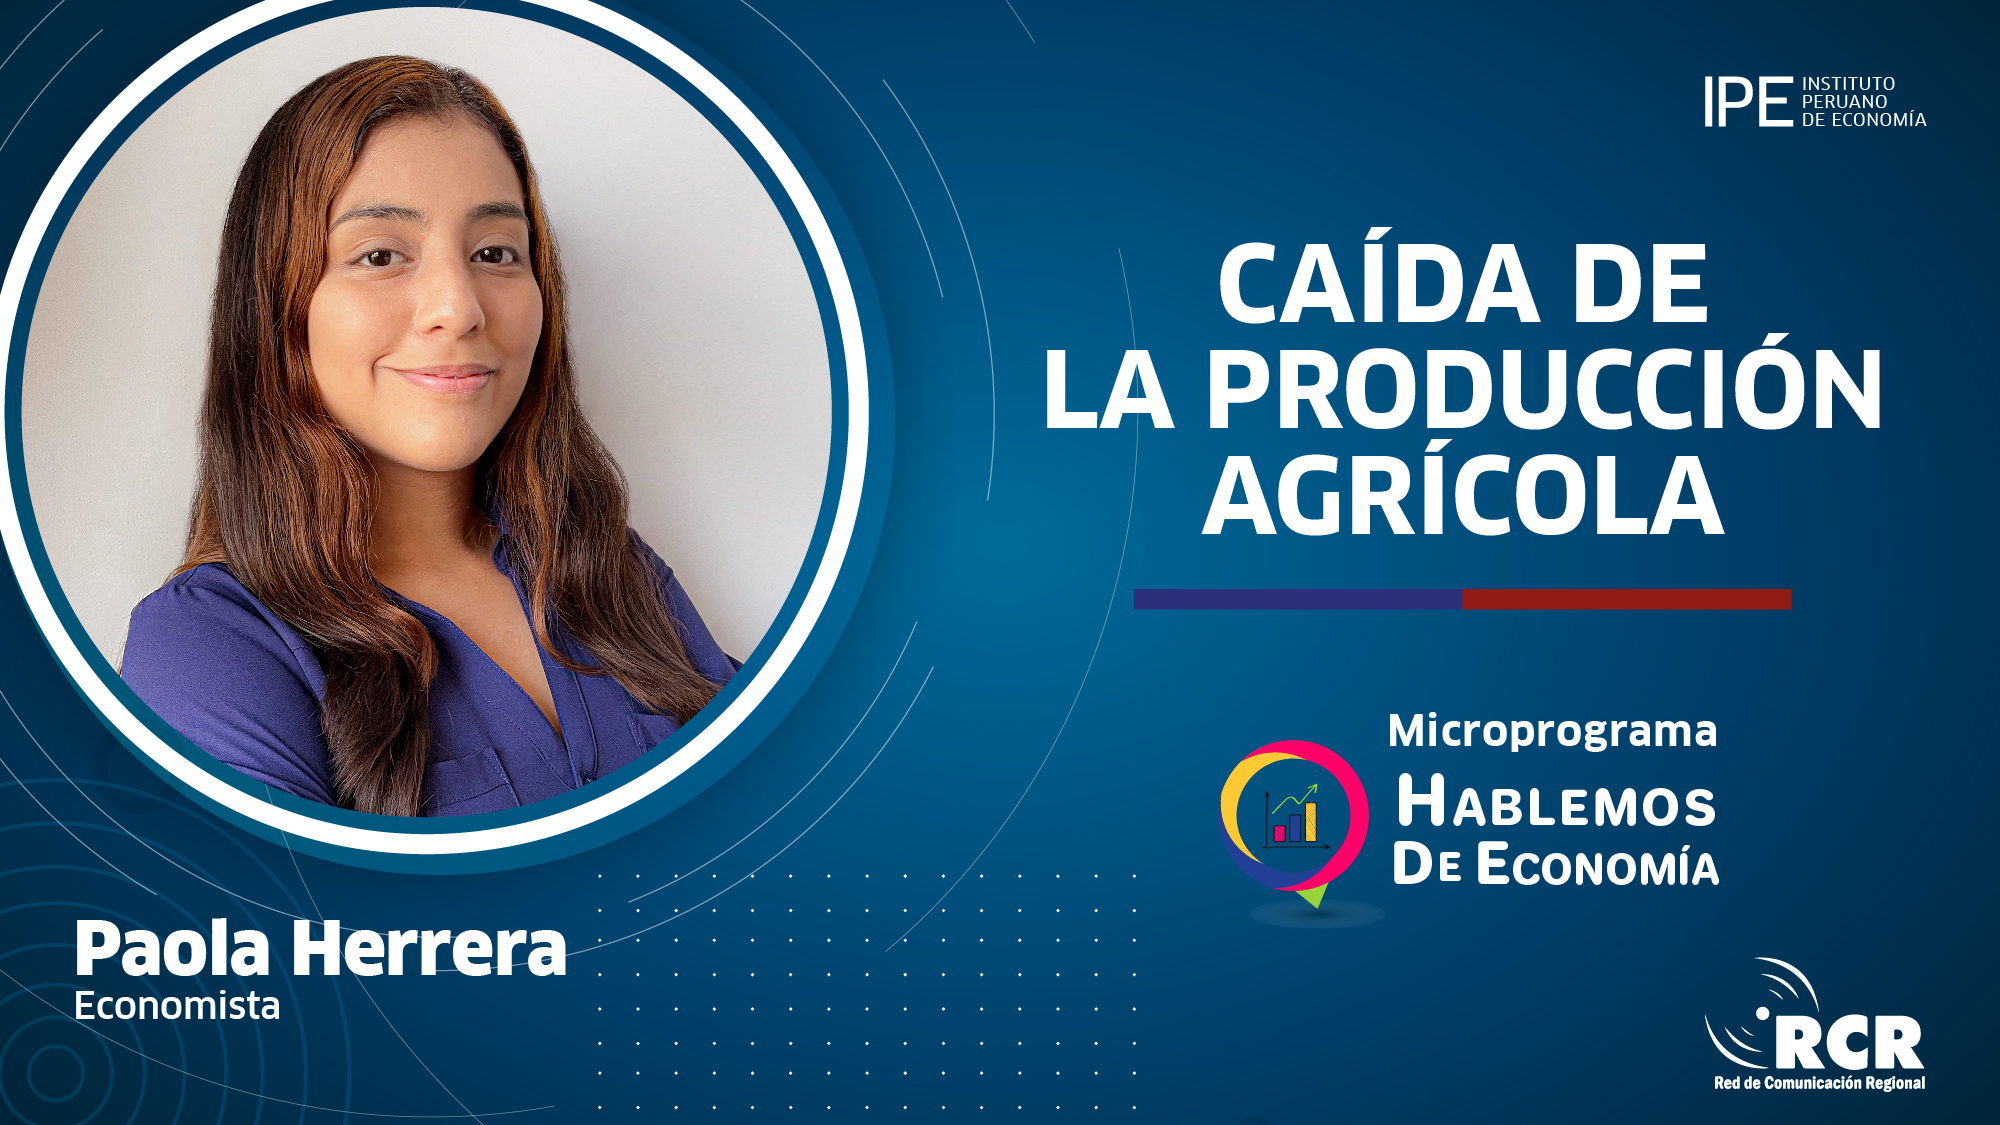 sector agrícola, Paola herrera, hablemos de economía, crisis del sector agrícola